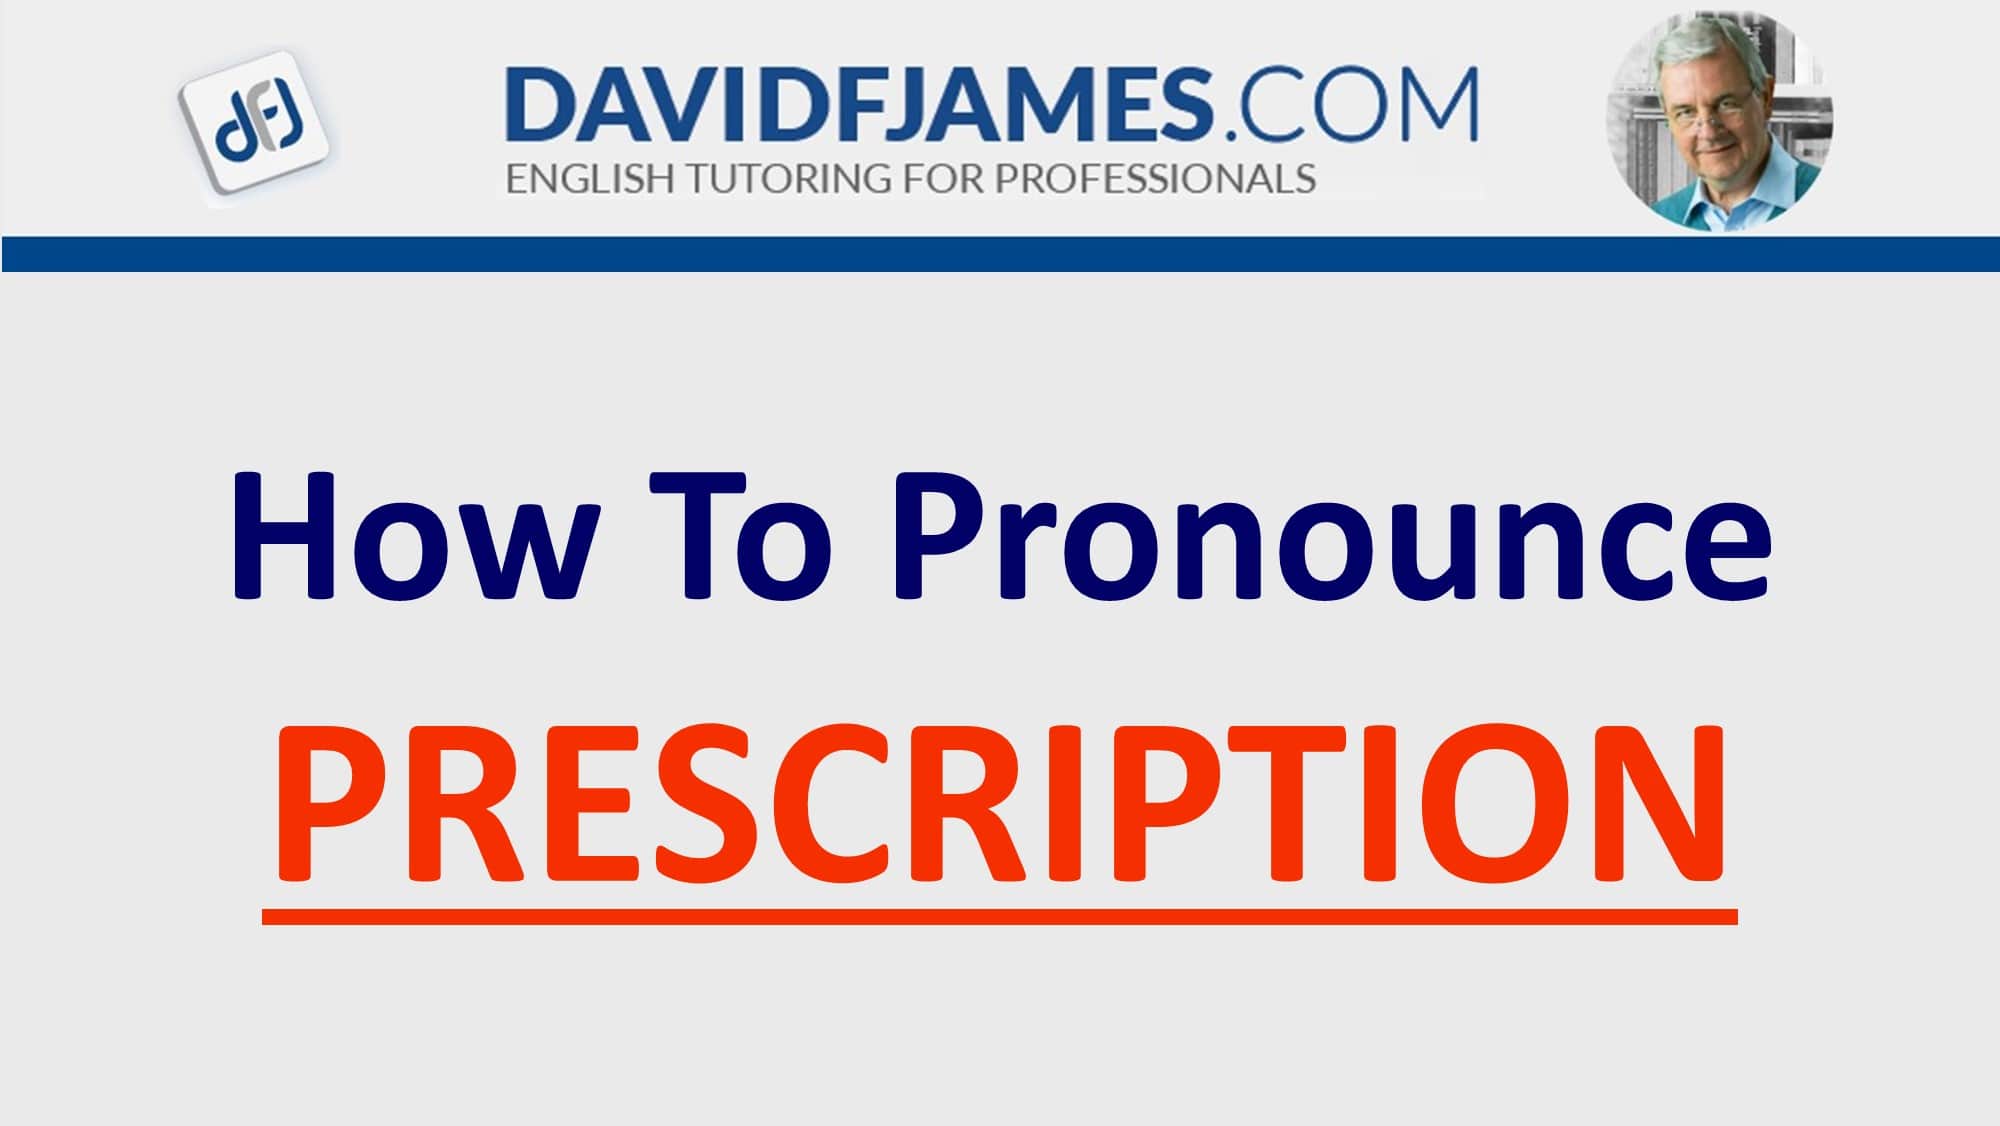 how to pronounce prescription - prescription in a sentence